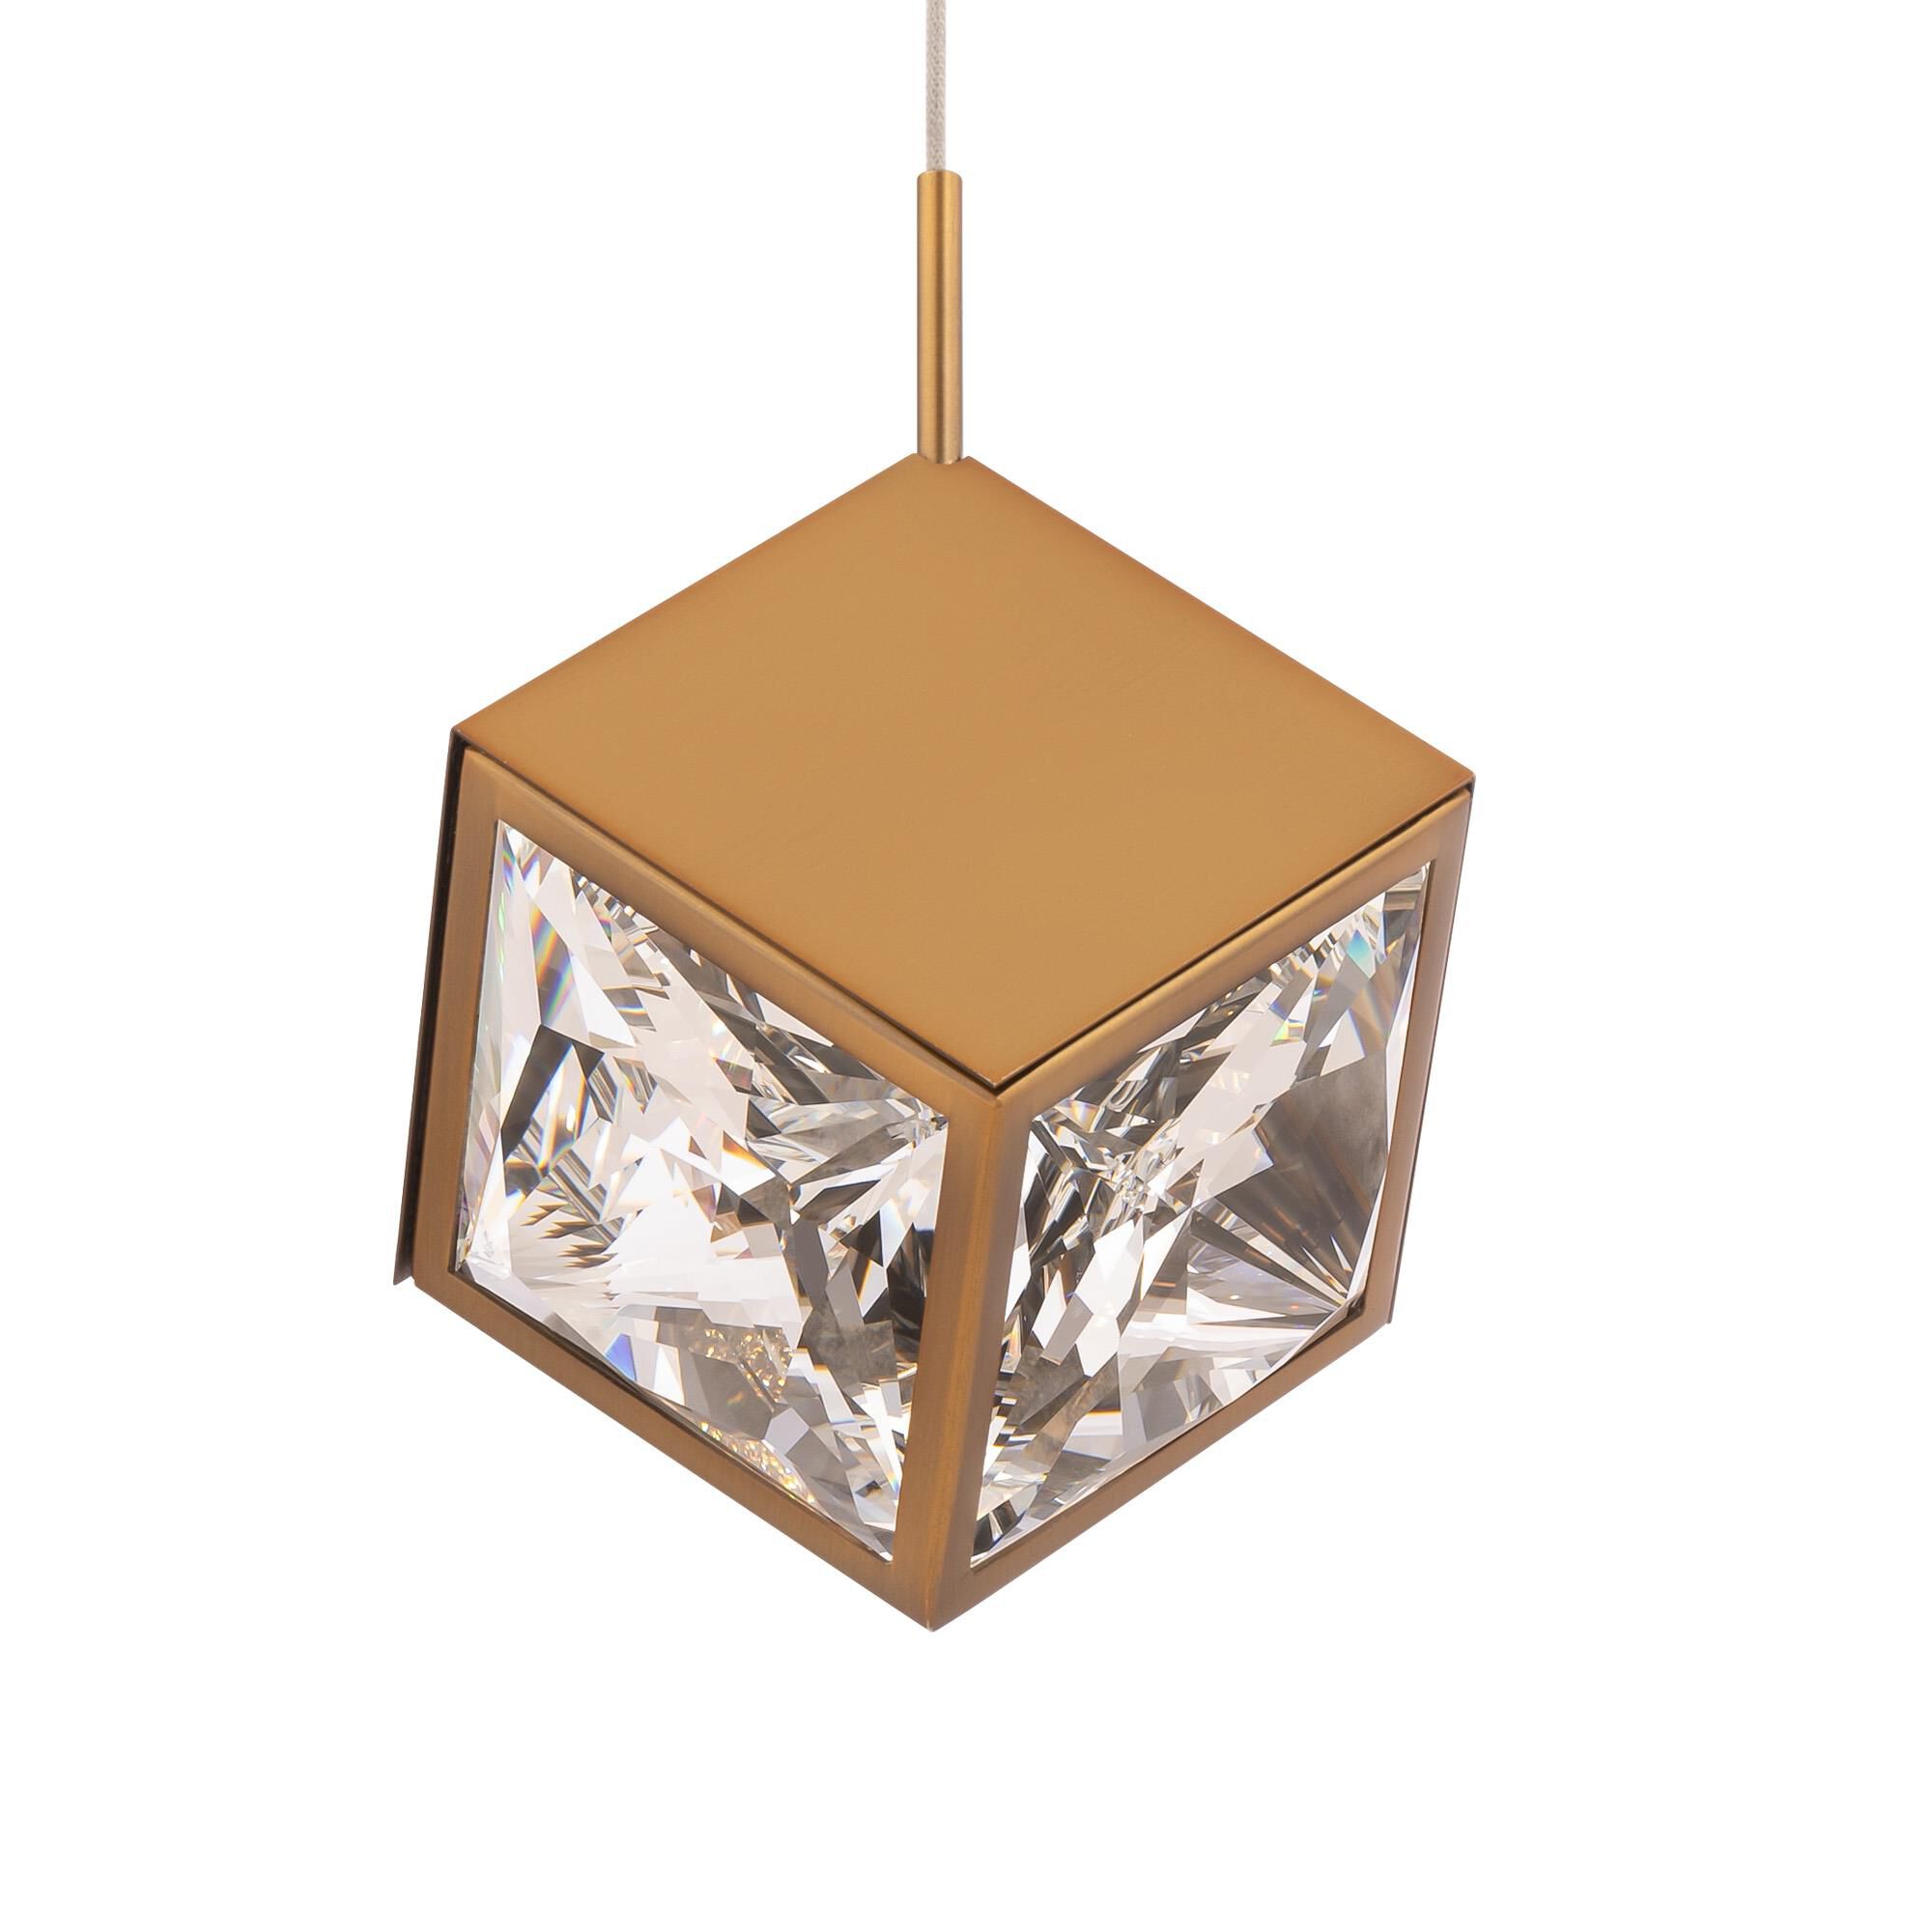 Photos - Chandelier / Lamp dwe LED Ice Cube 6 Inch LED Mini Pendant Ice Cube - PD-29308-AB - Modern C